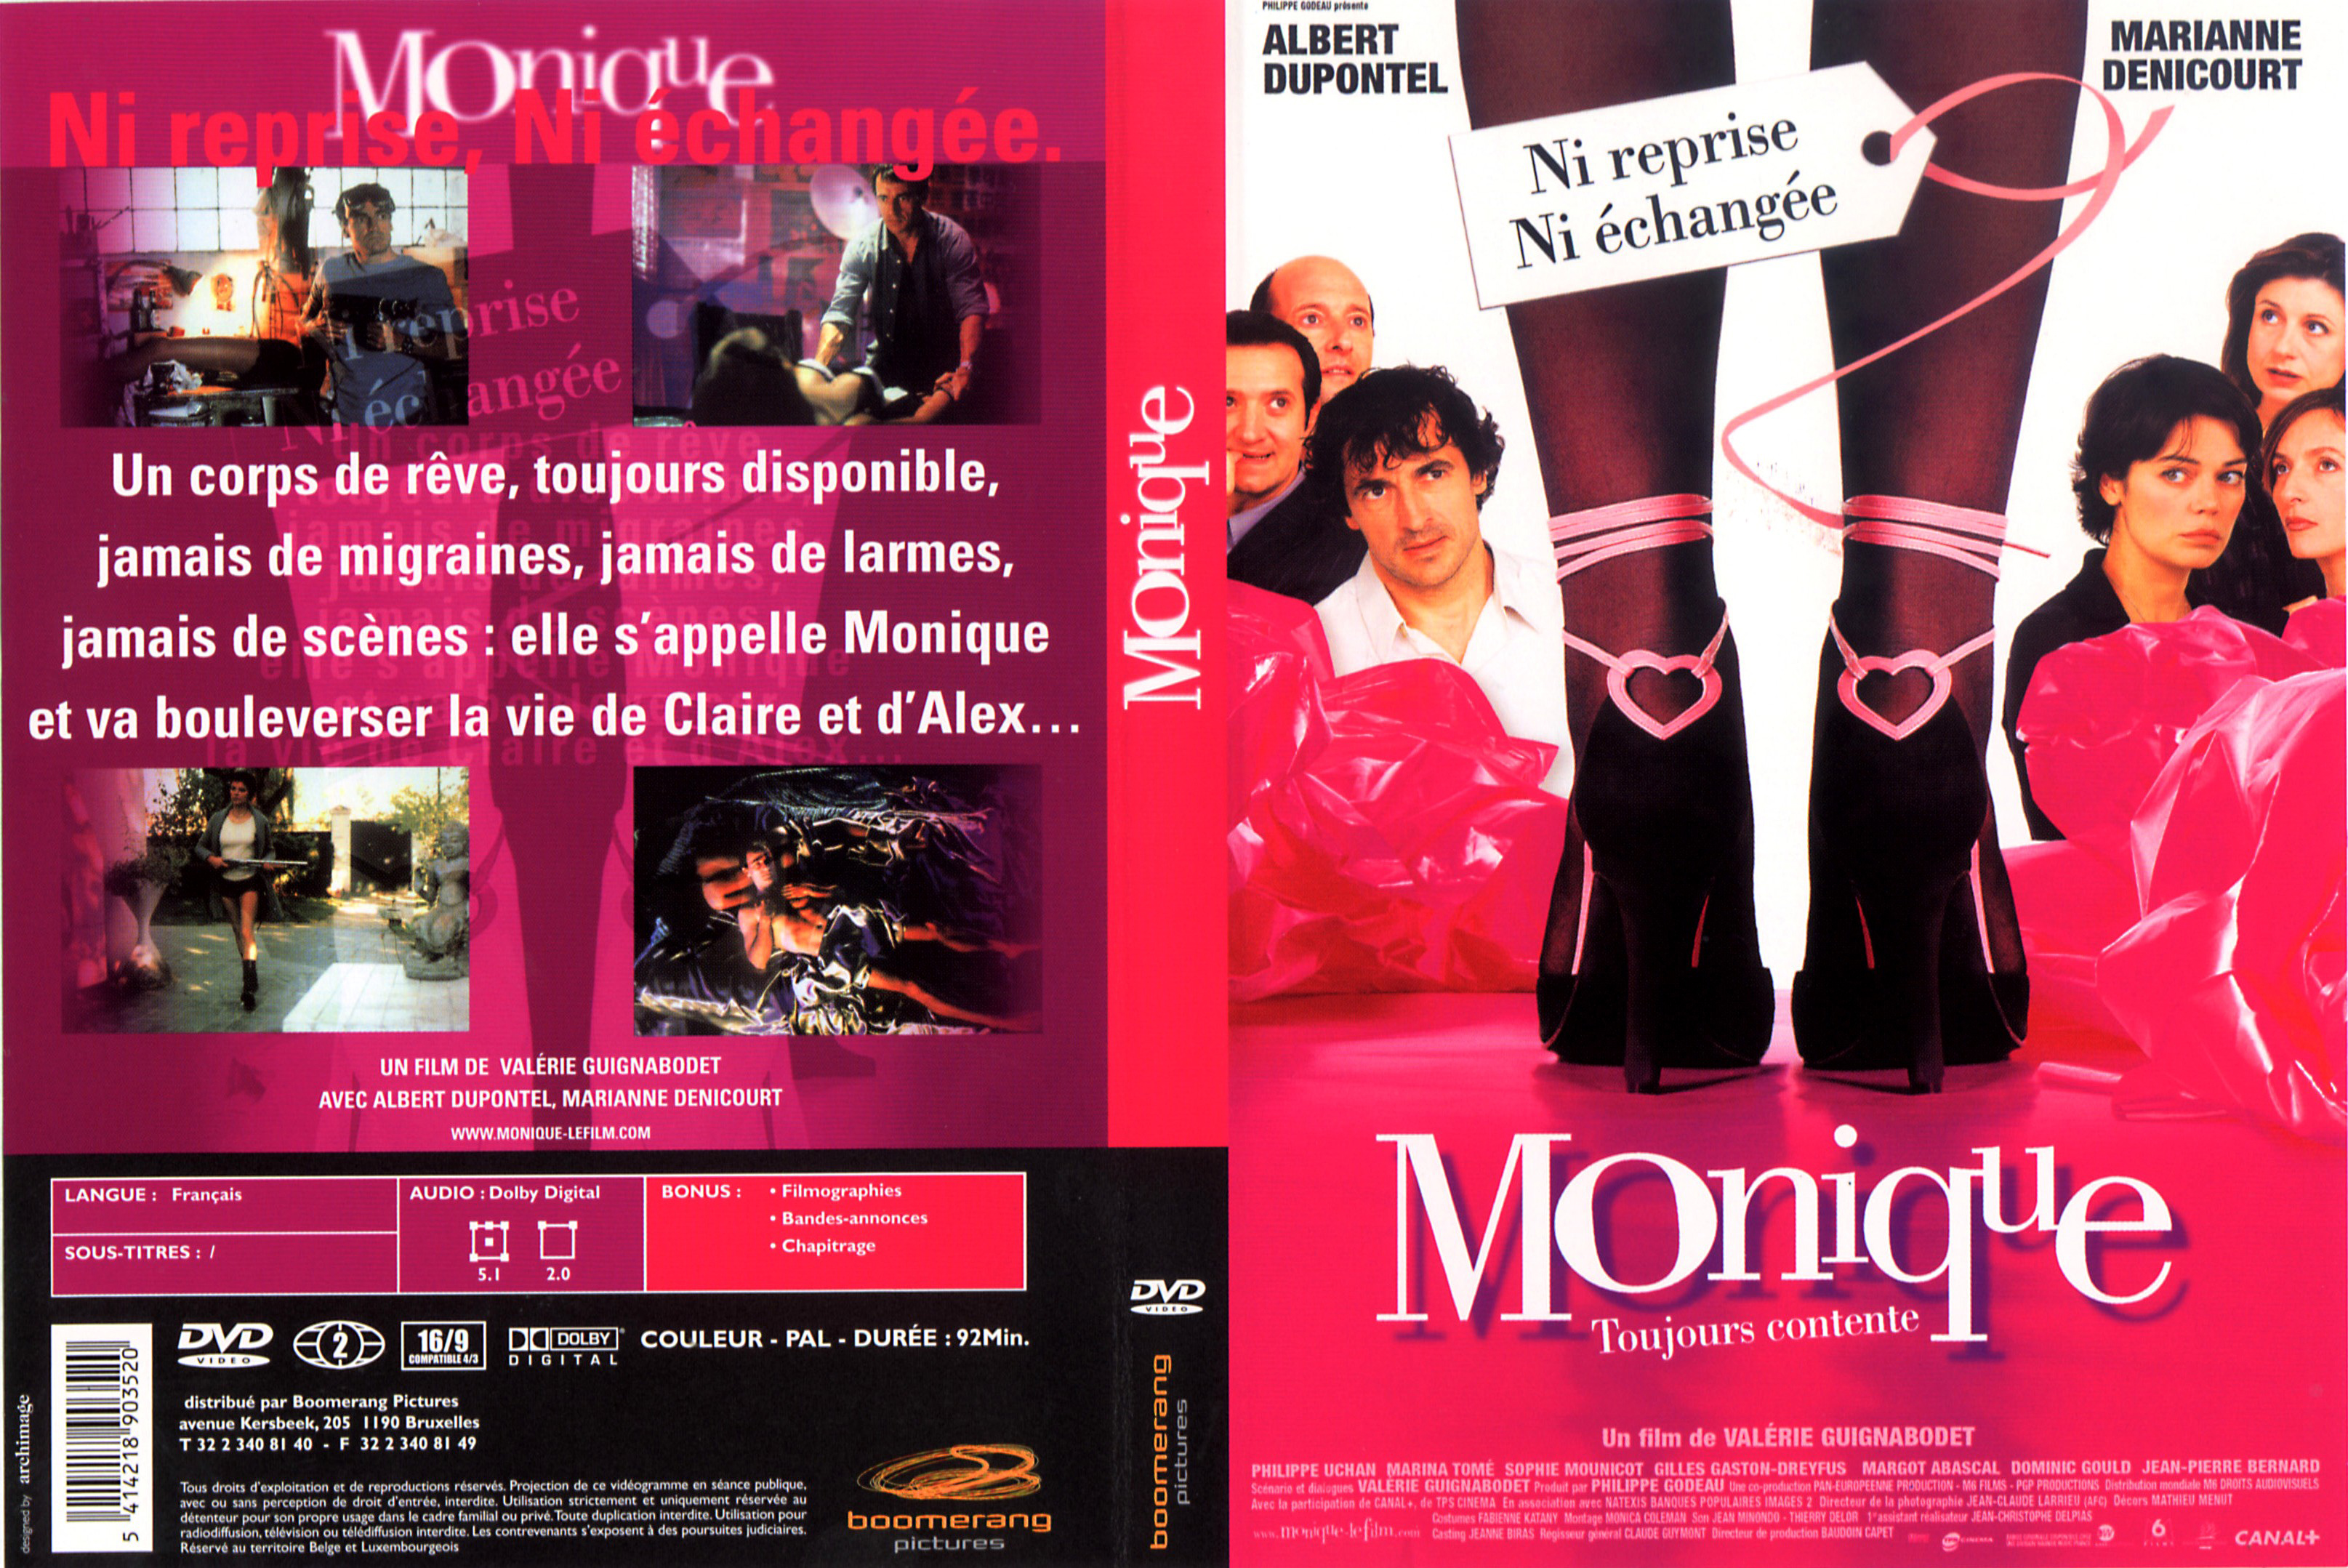 Jaquette DVD Monique v2